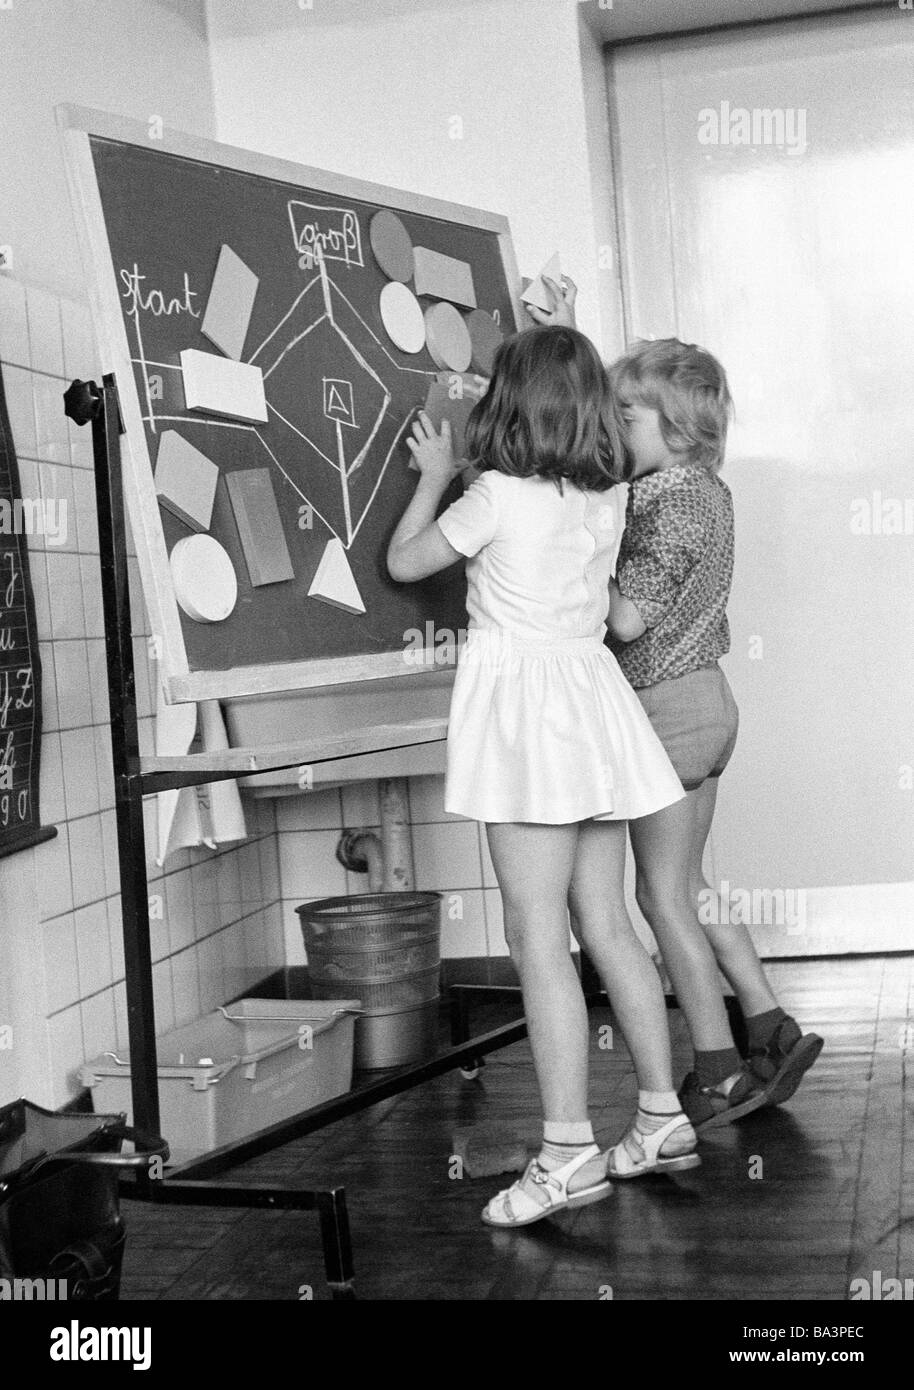 Negli anni settanta, foto in bianco e nero, di edificazione, scuola, scolari e studentesse in una scuola di classe durante le lezioni, i bambini di età compresa tra i 7 e i 10 anni, un ragazzo e una ragazza a una lavagna Foto Stock